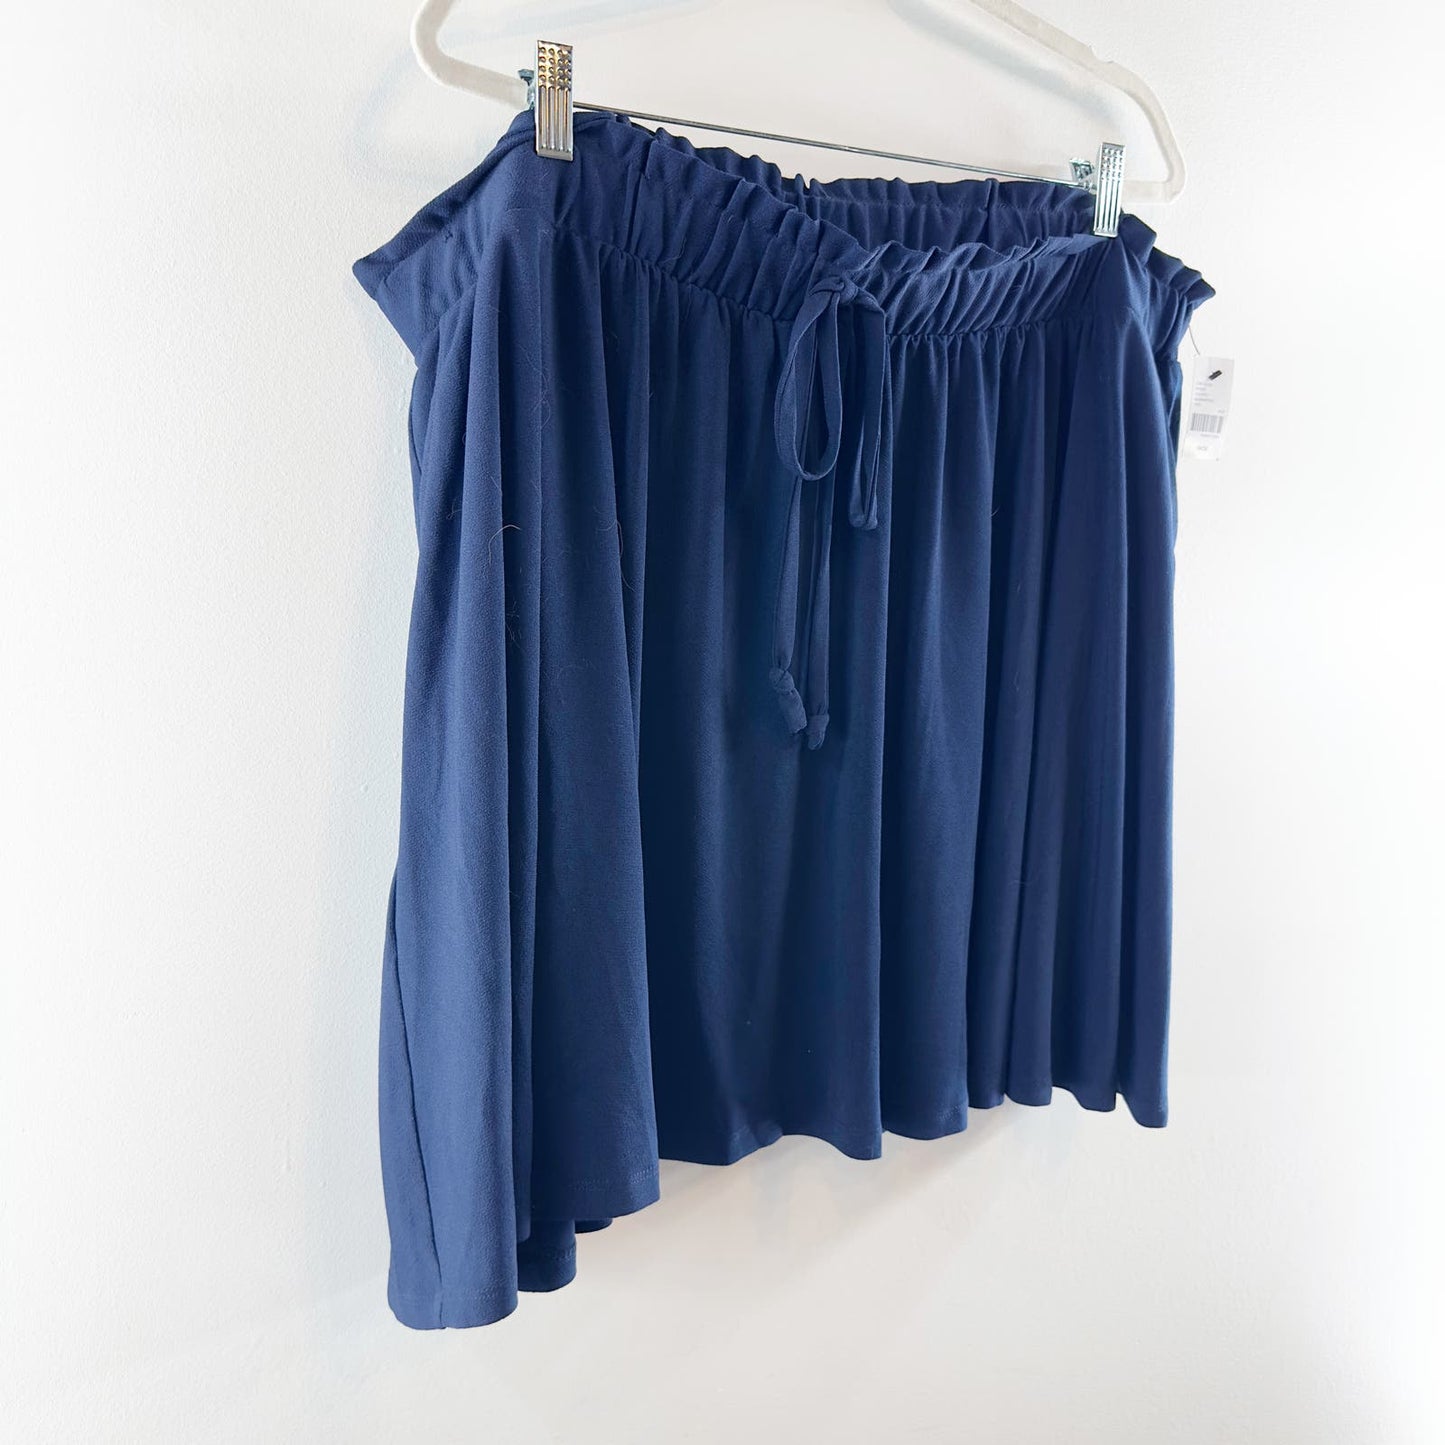 Lane Bryant Pull On Elastic Waist Drawstring Mini Skirt Navy Blue 26/28